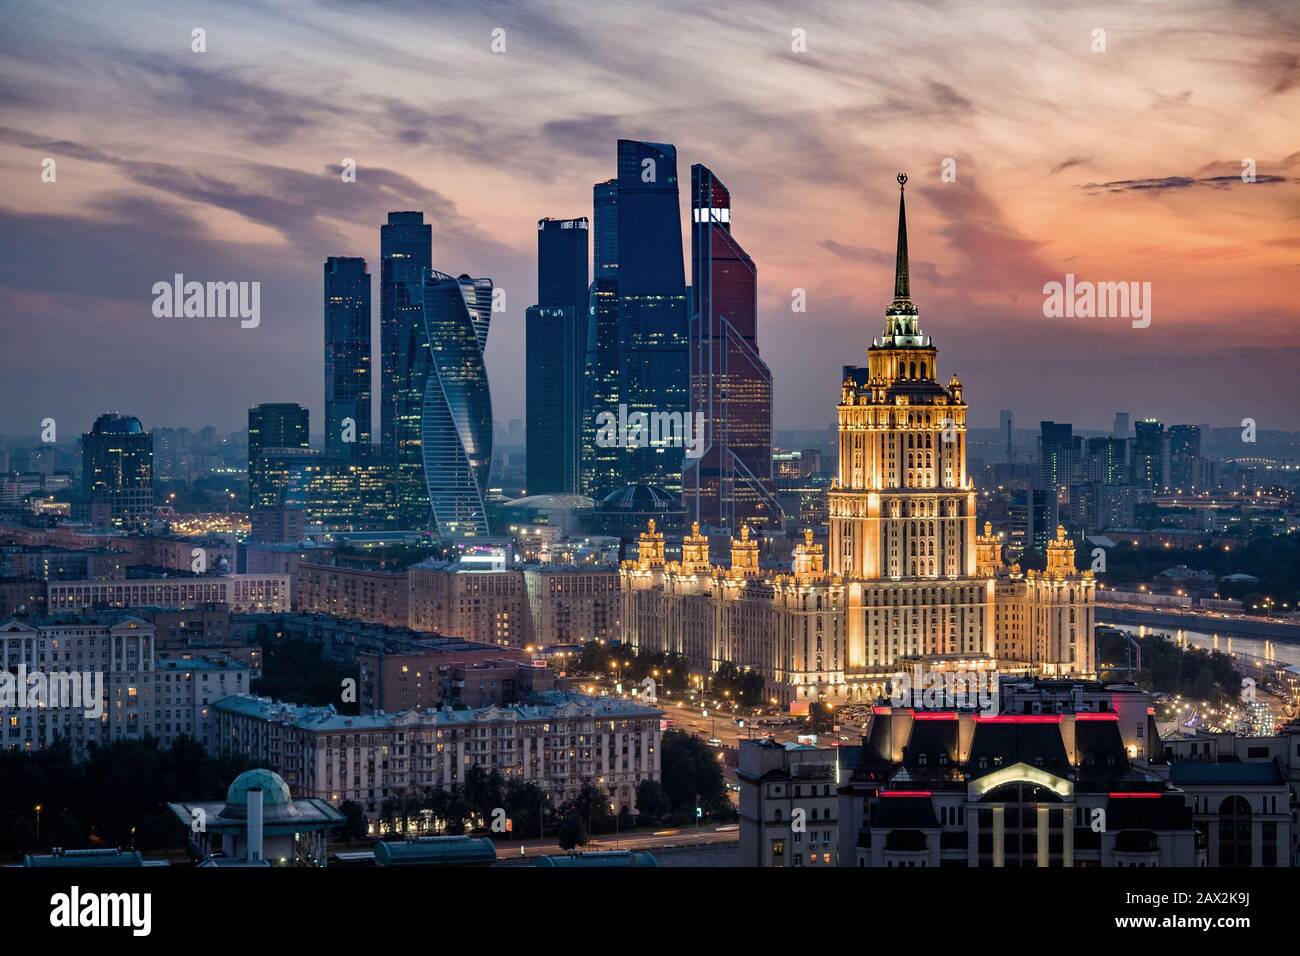 Veduta aerea dello skyline di Mosca al tramonto che mostra i monumenti architettonici e l'International Business Center a Mosca, Russia. Foto Stock